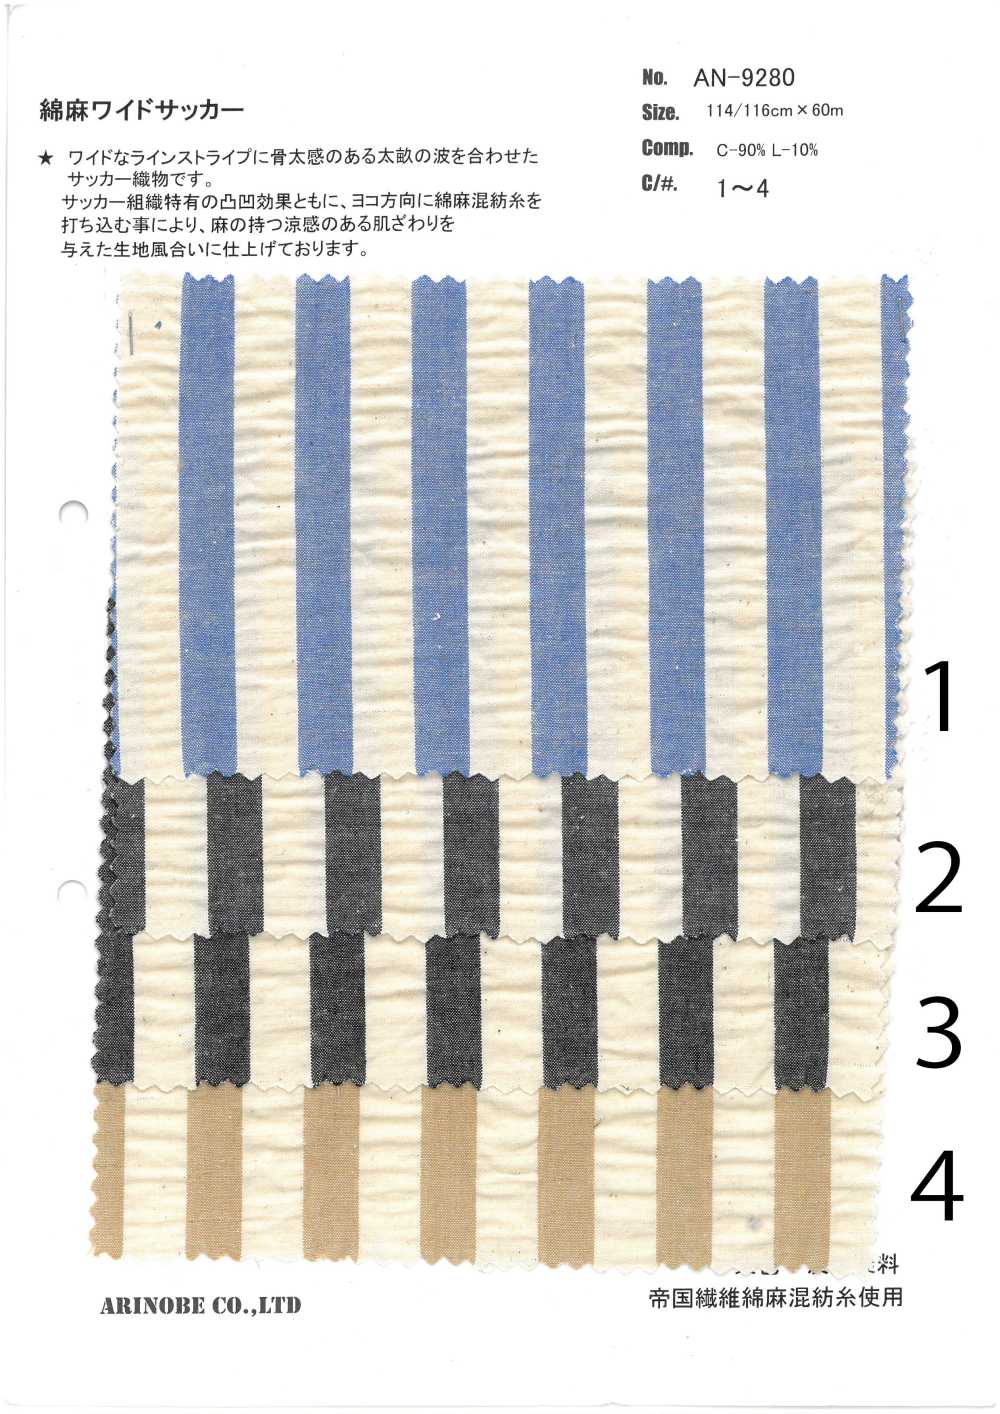 AN-9280 Leinen-Seersucker-Streifen[Textilgewebe] ARINOBE CO., LTD.